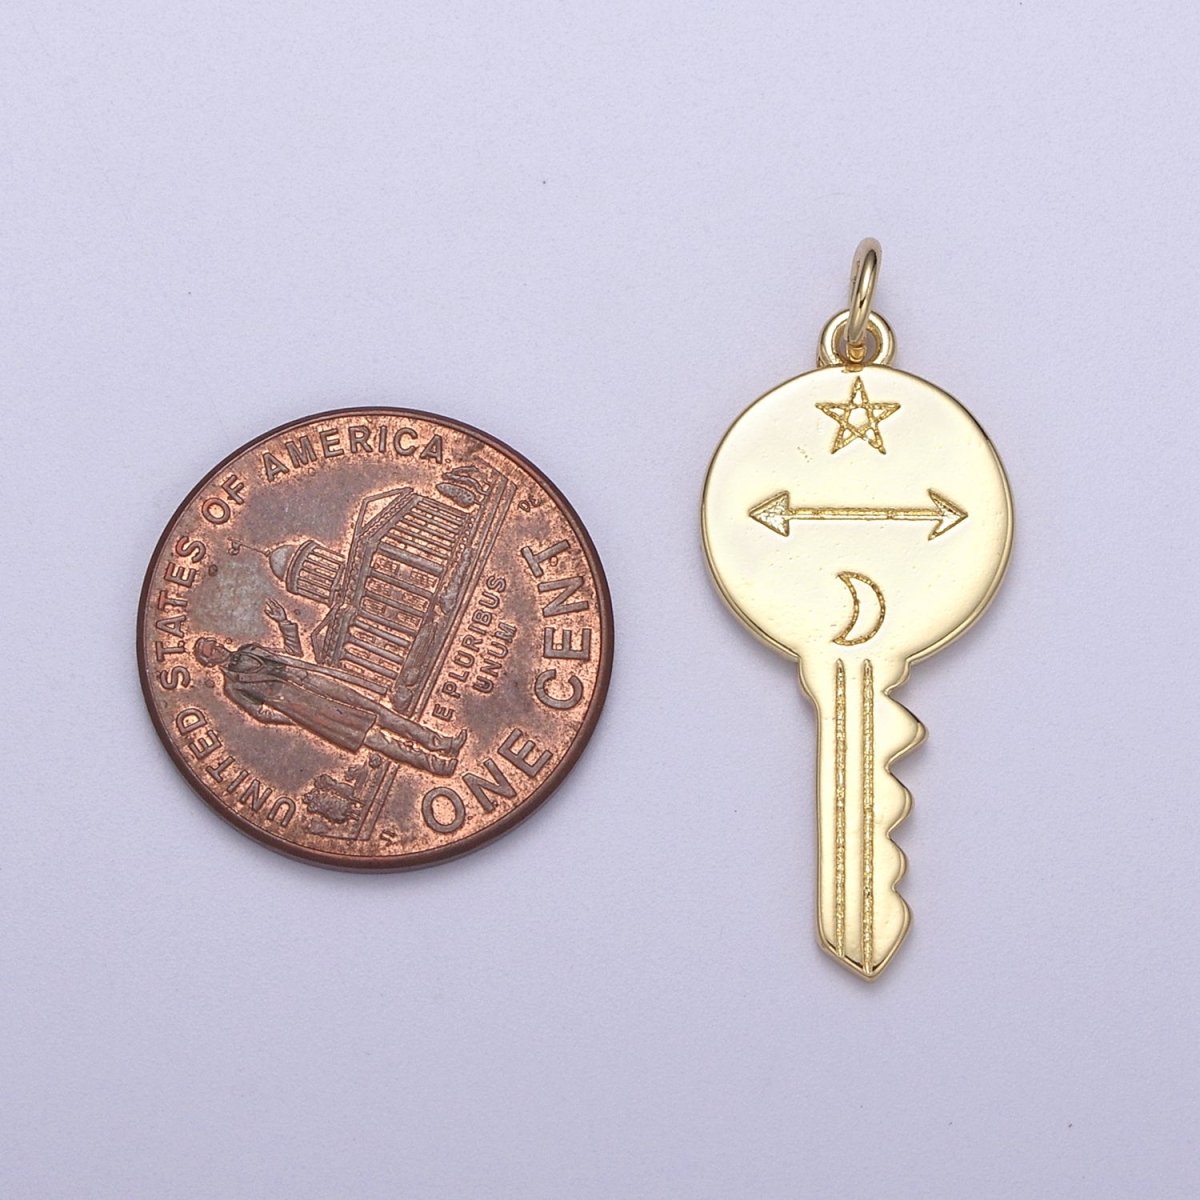 14K Gold Filled Celestial Key | Key Pendant | Gold Key Necklace | Key Charm | Star Moon Arrow N-299 - DLUXCA